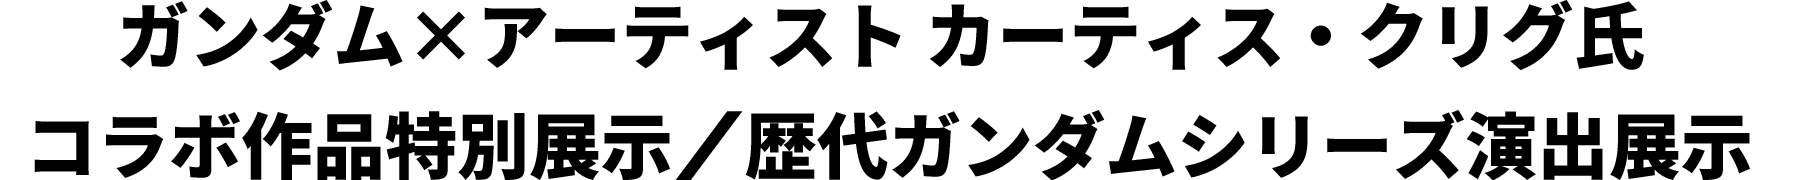 ガンダム×アーティスト カーティス・クリグ氏コラボ作品特別展示/歴代ガンダムシリーズ演出展示